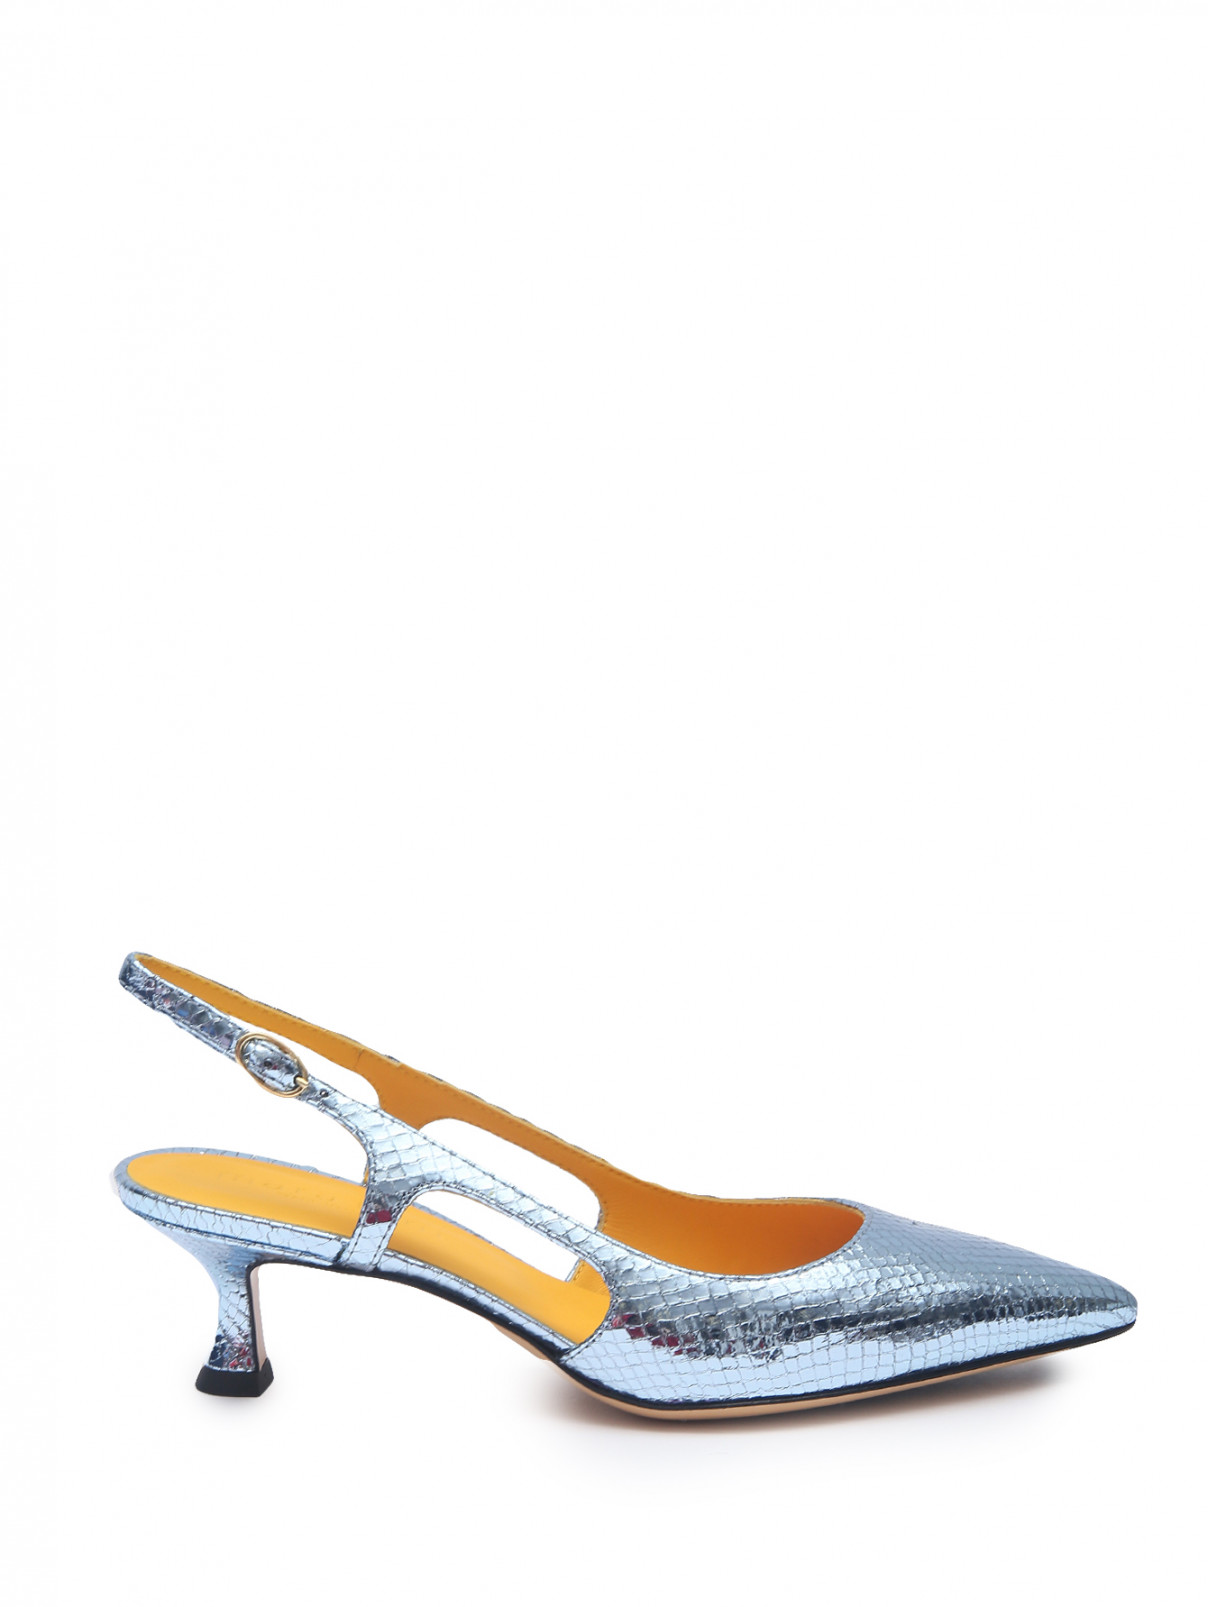 Туфли из металлизированной кожи Mara bini  –  Общий вид  – Цвет:  Синий